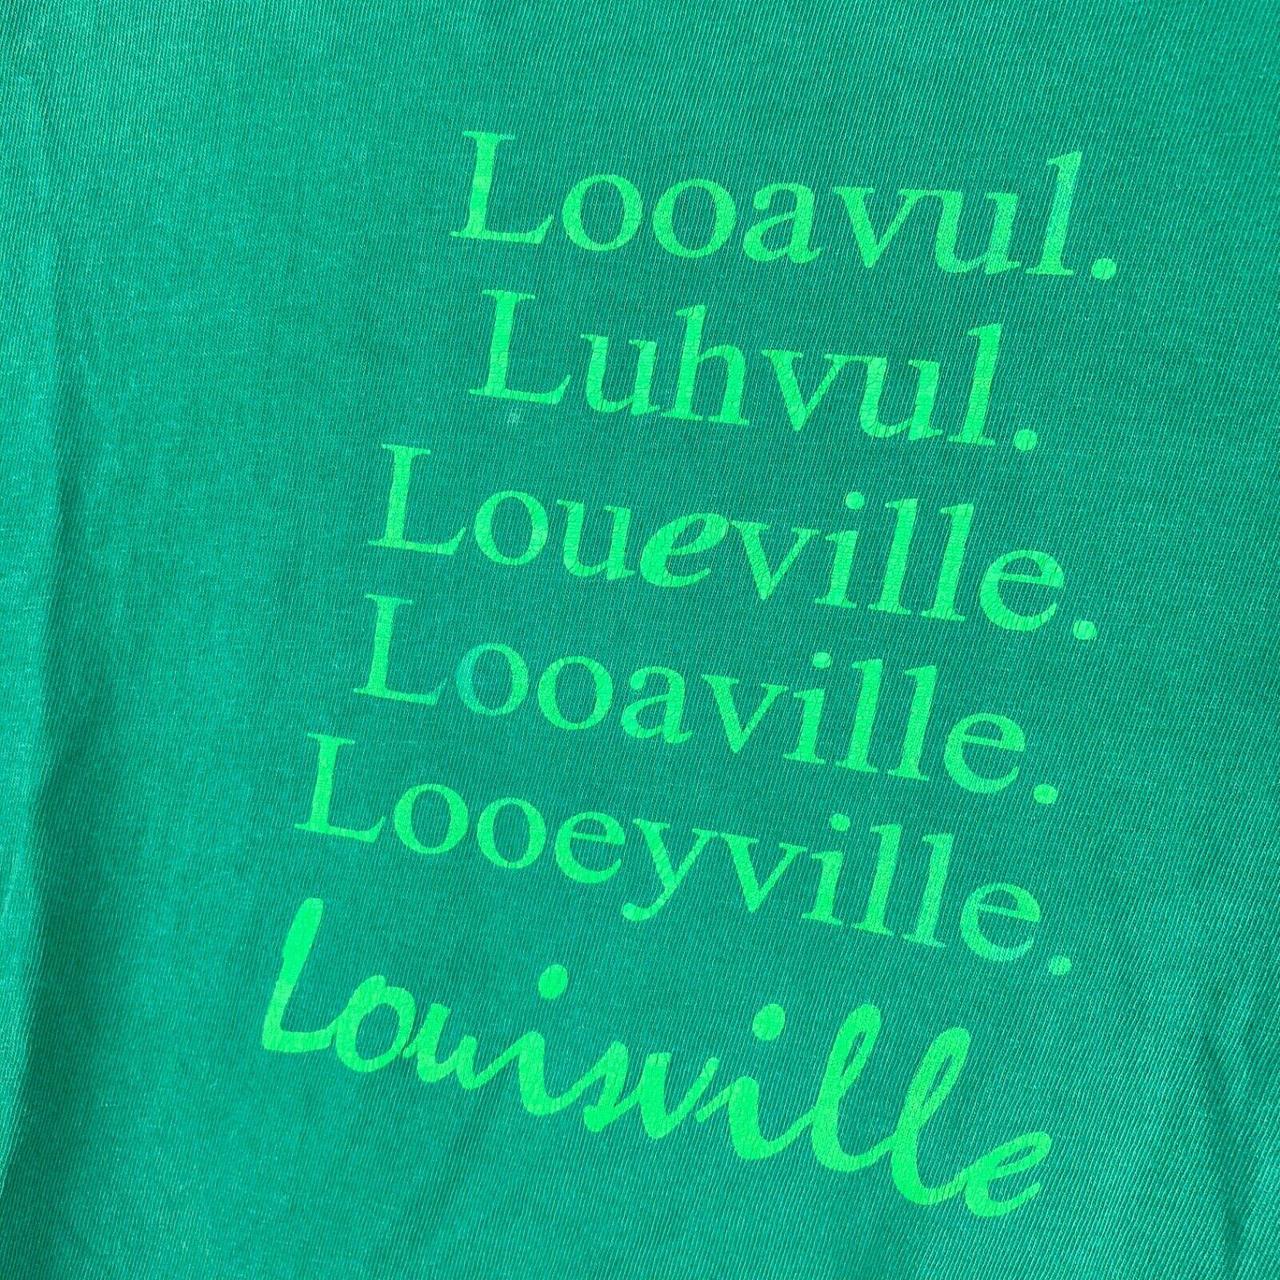 Looavul. Luhvul. Looaville. Looeyville. Louisville